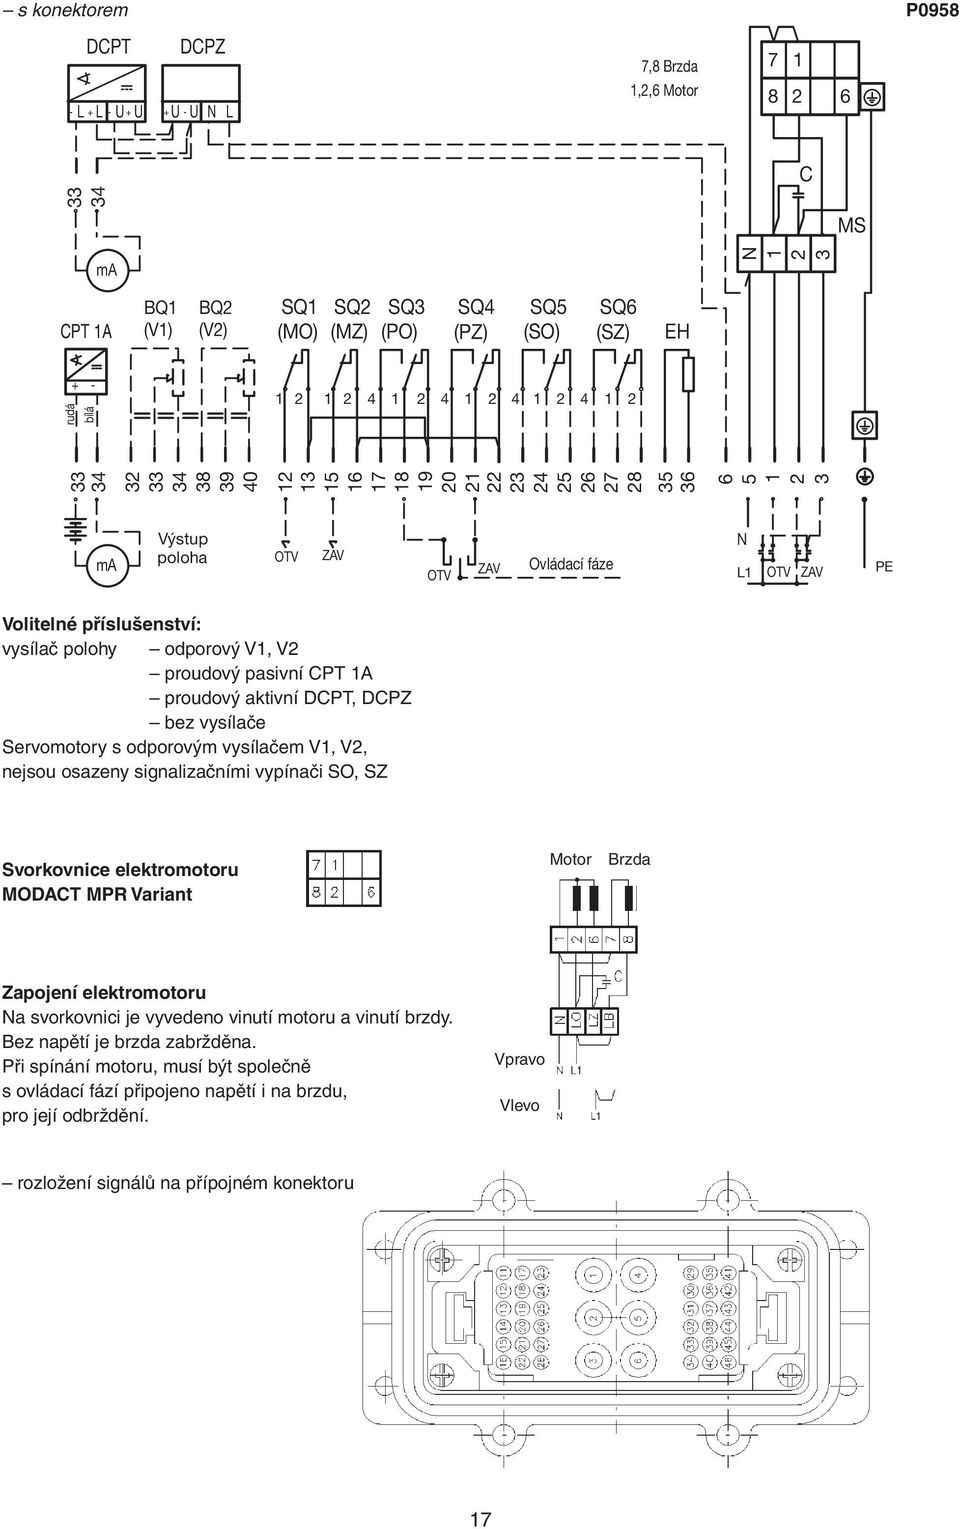 Volitelné příslušenství: vysílač polohy odporový V1, V2 proudový pasivní CPT 1A proudový aktivní DCPT, DCPZ bez vysílače Servomotory s odporovým vysílačem V1, V2, nejsou osazeny signalizačními